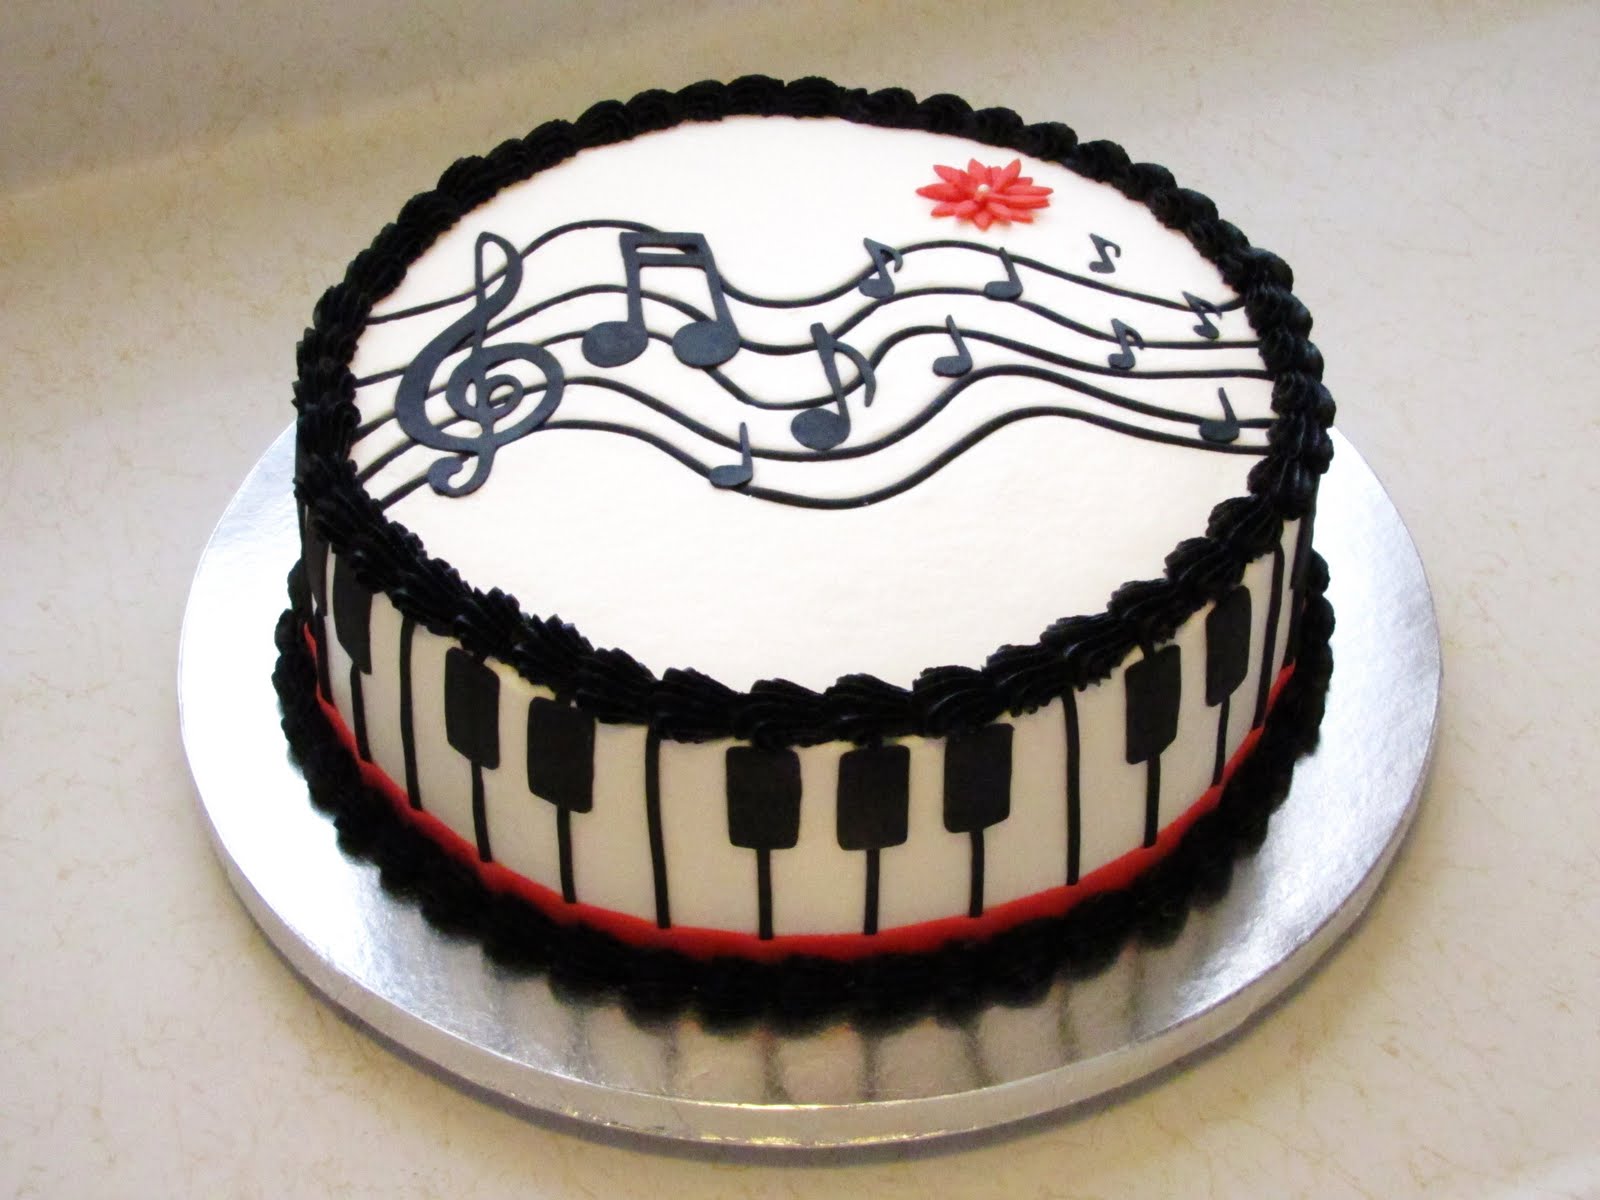 Musical Birthday Cake